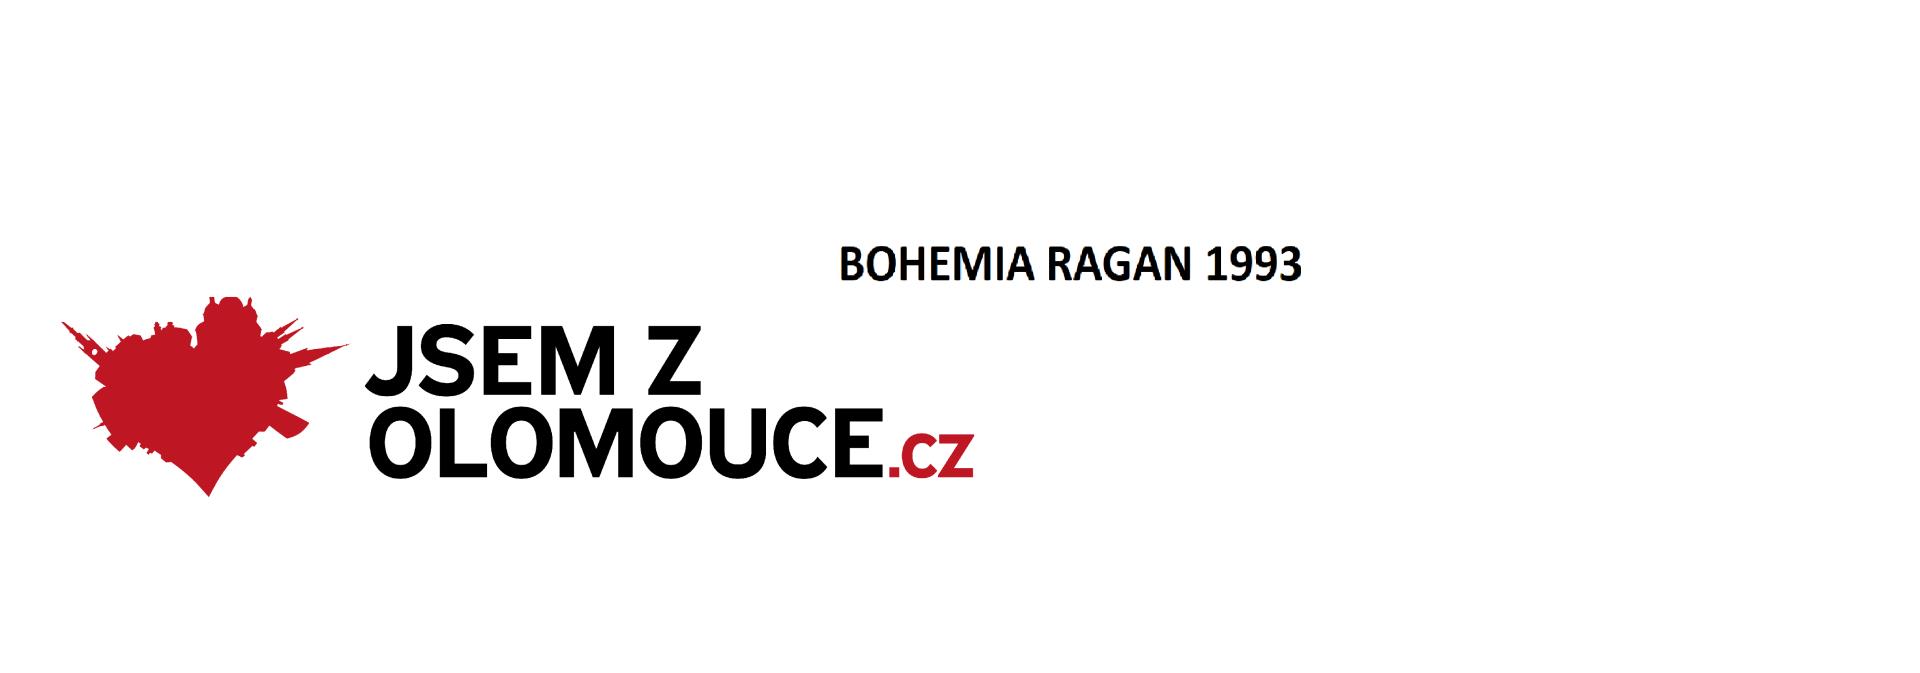 Bohemia RAGAN 1993 sklo-porcelán